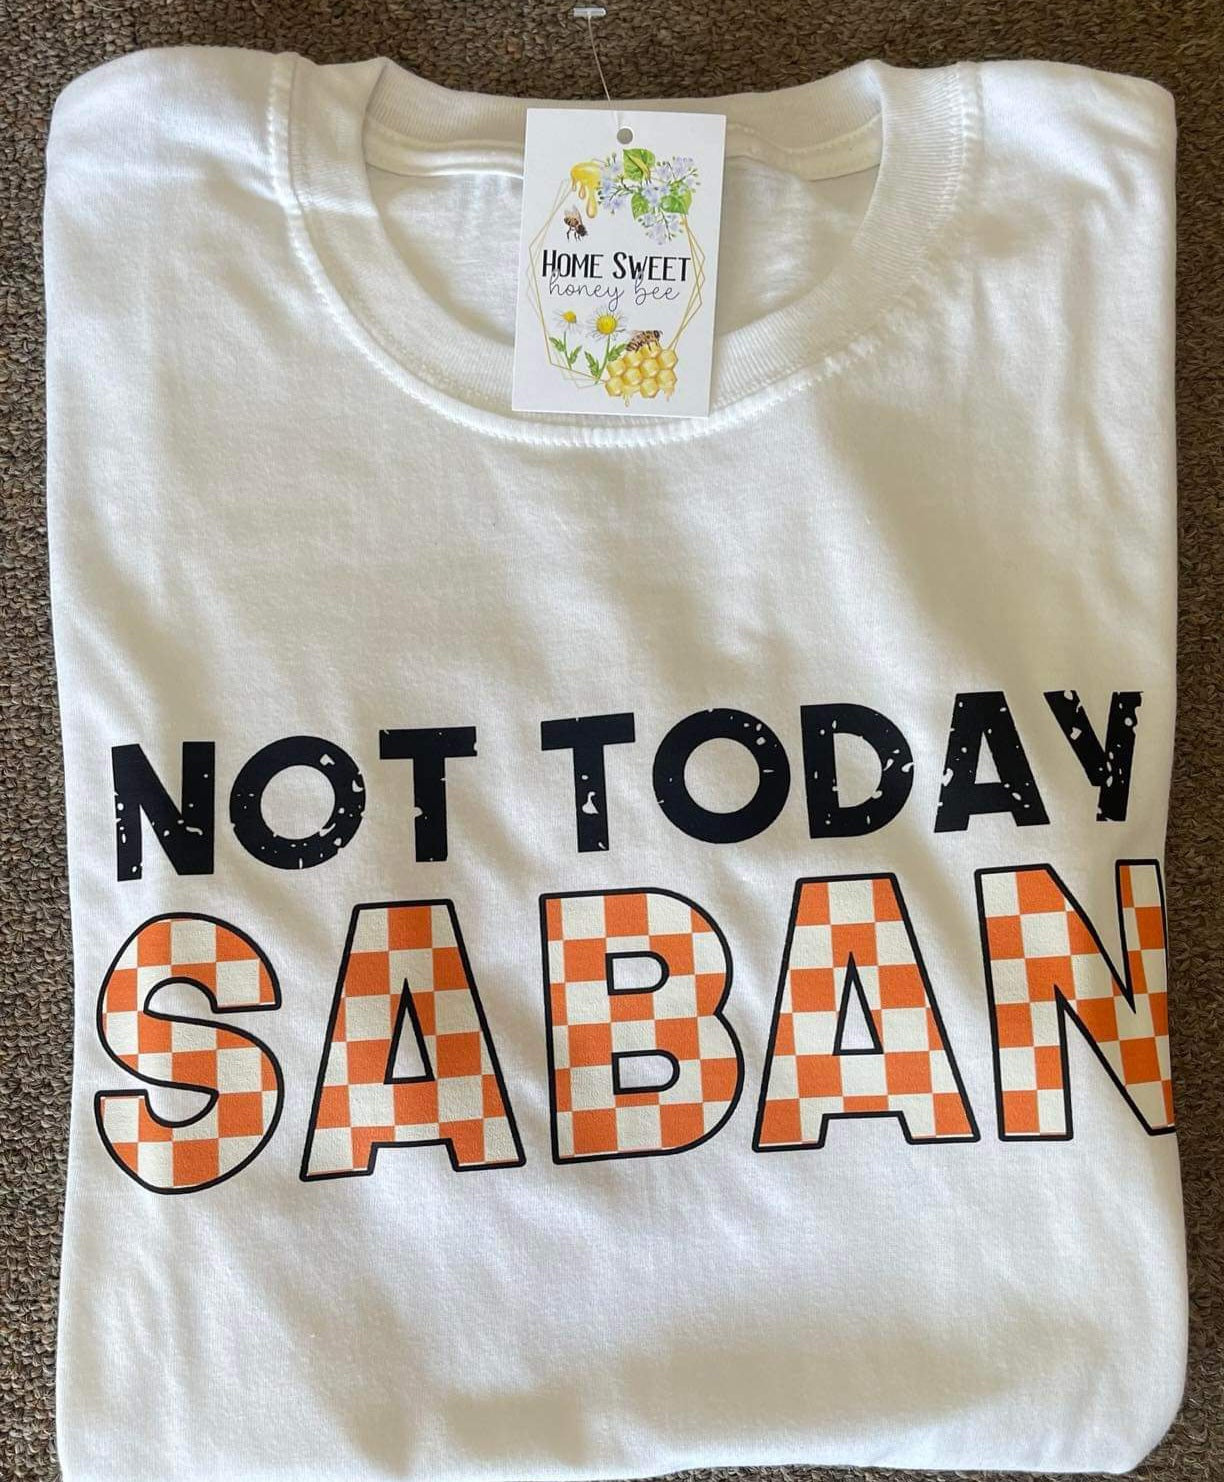 Not Today Saban Tee